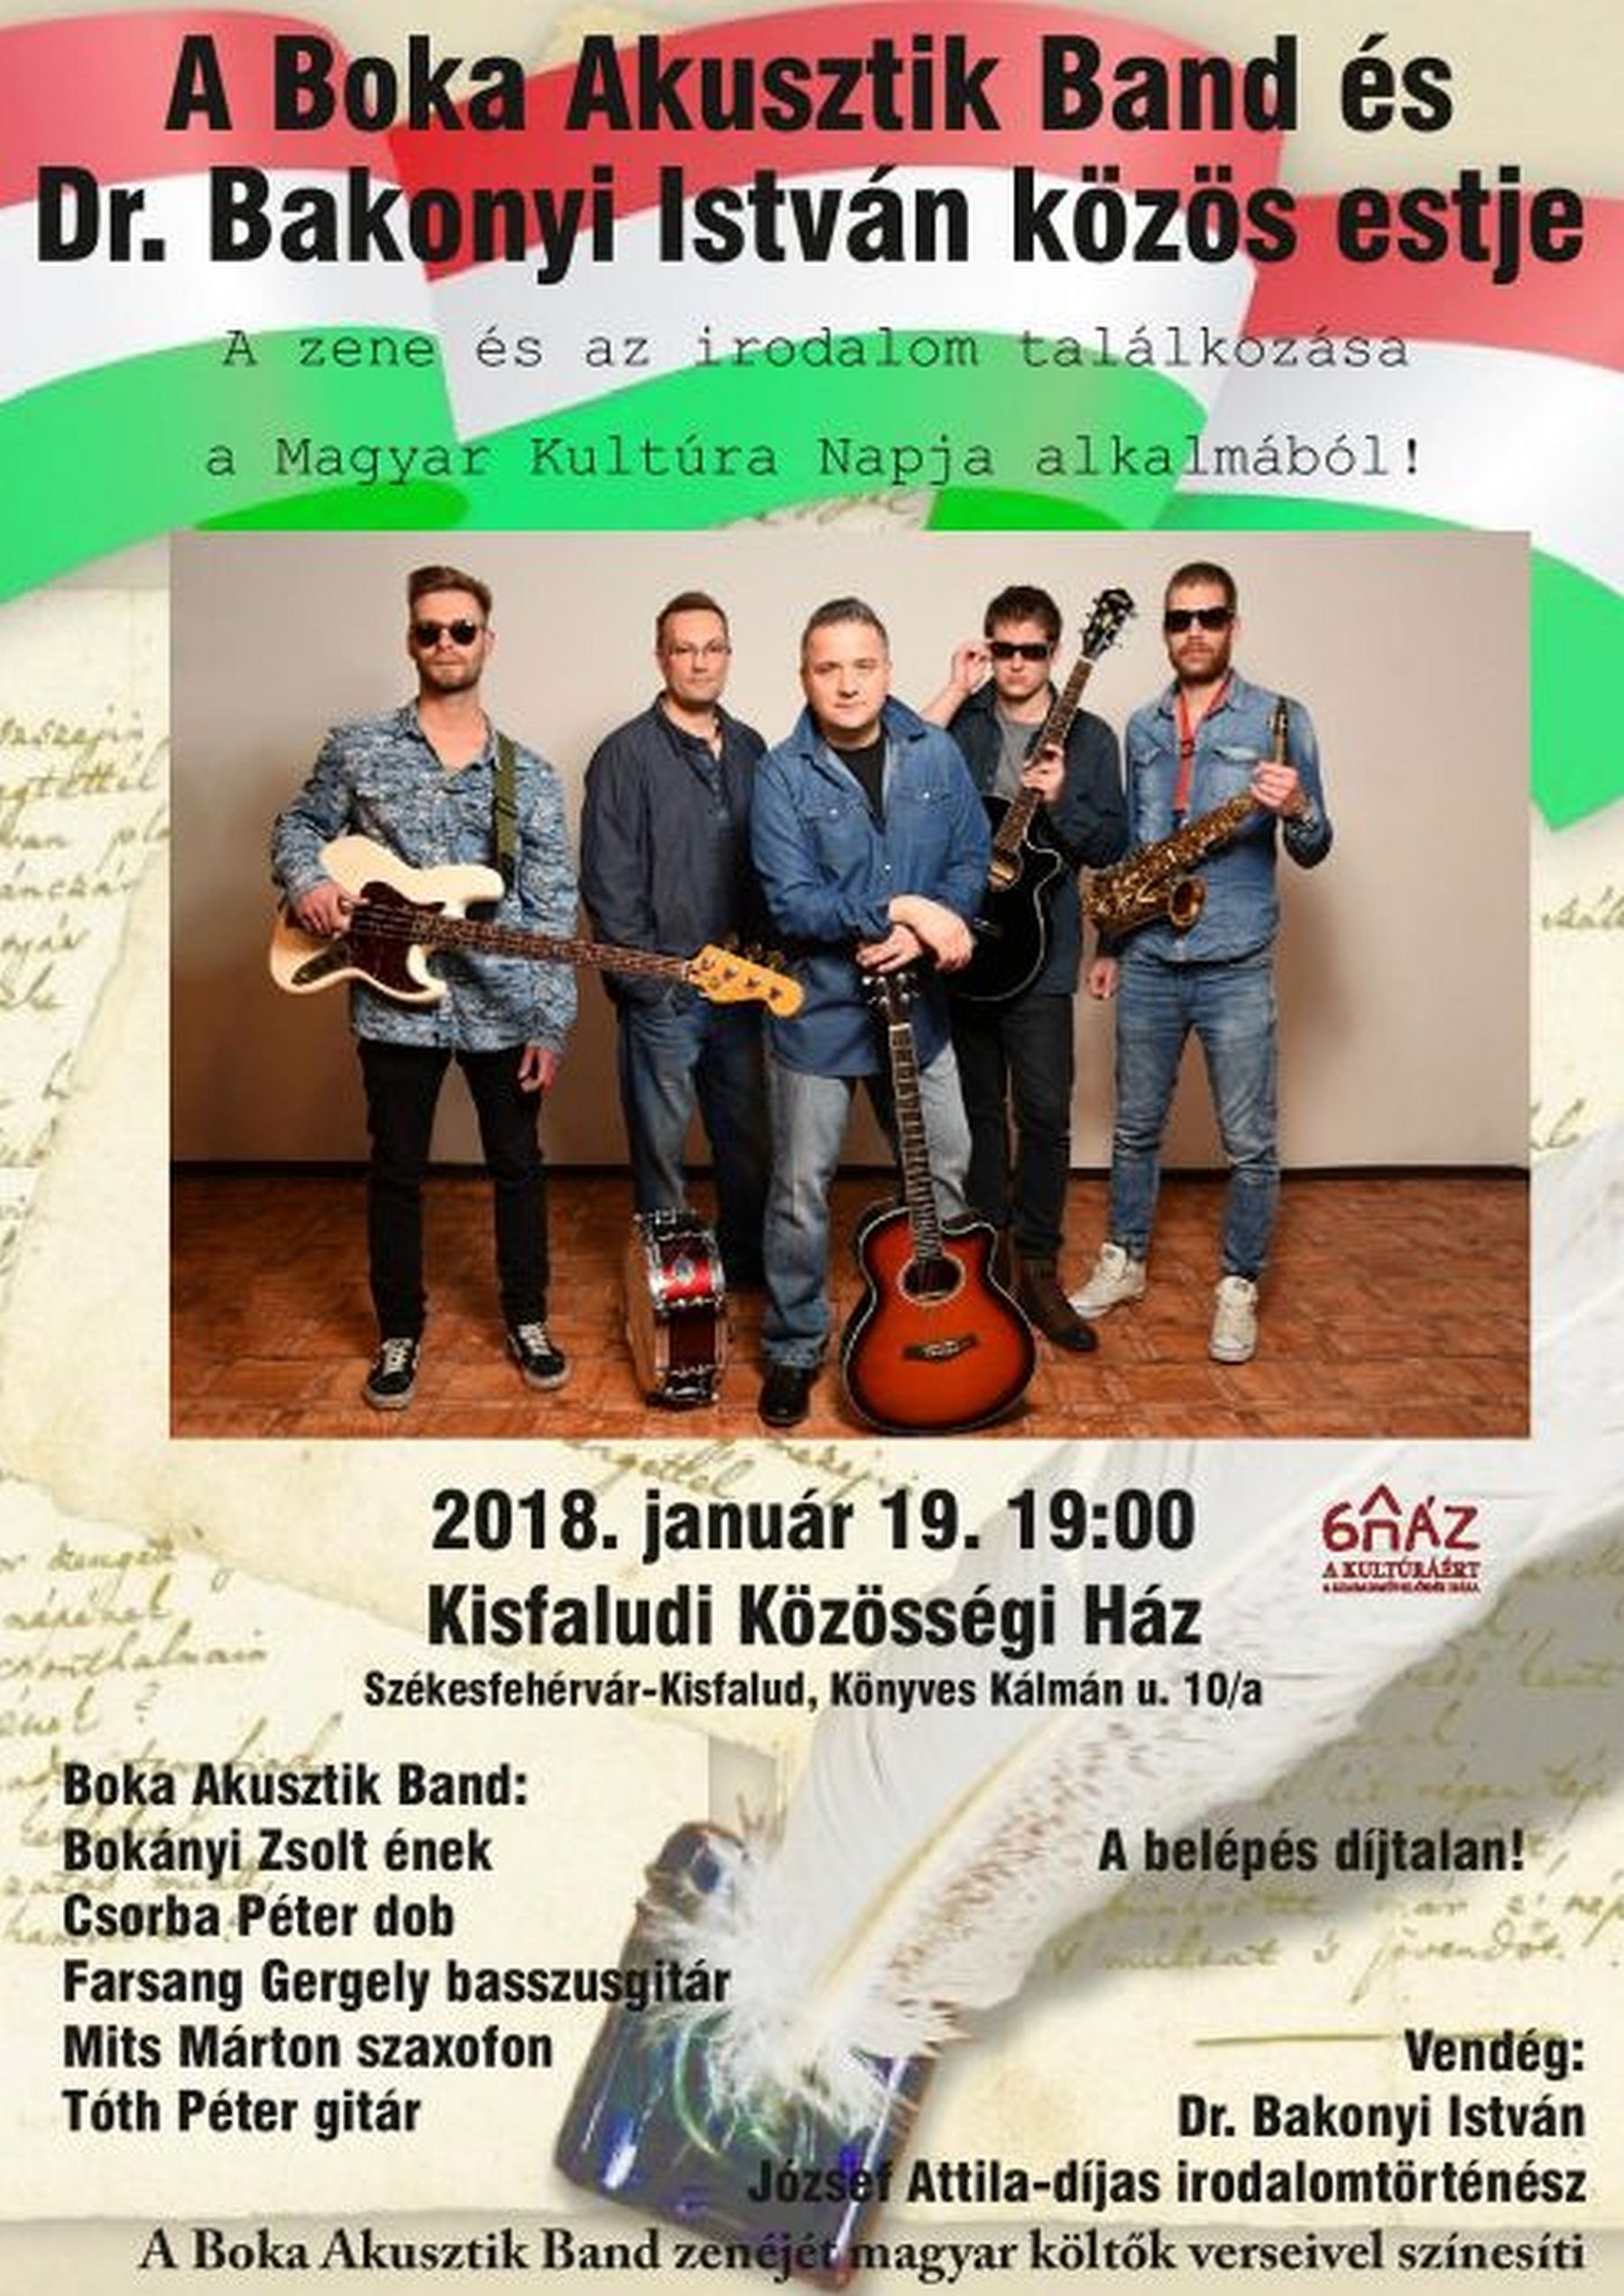 A Boka Akusztik Band és Bakonyi István közös estje a Kisfaludi Közösségi Házban